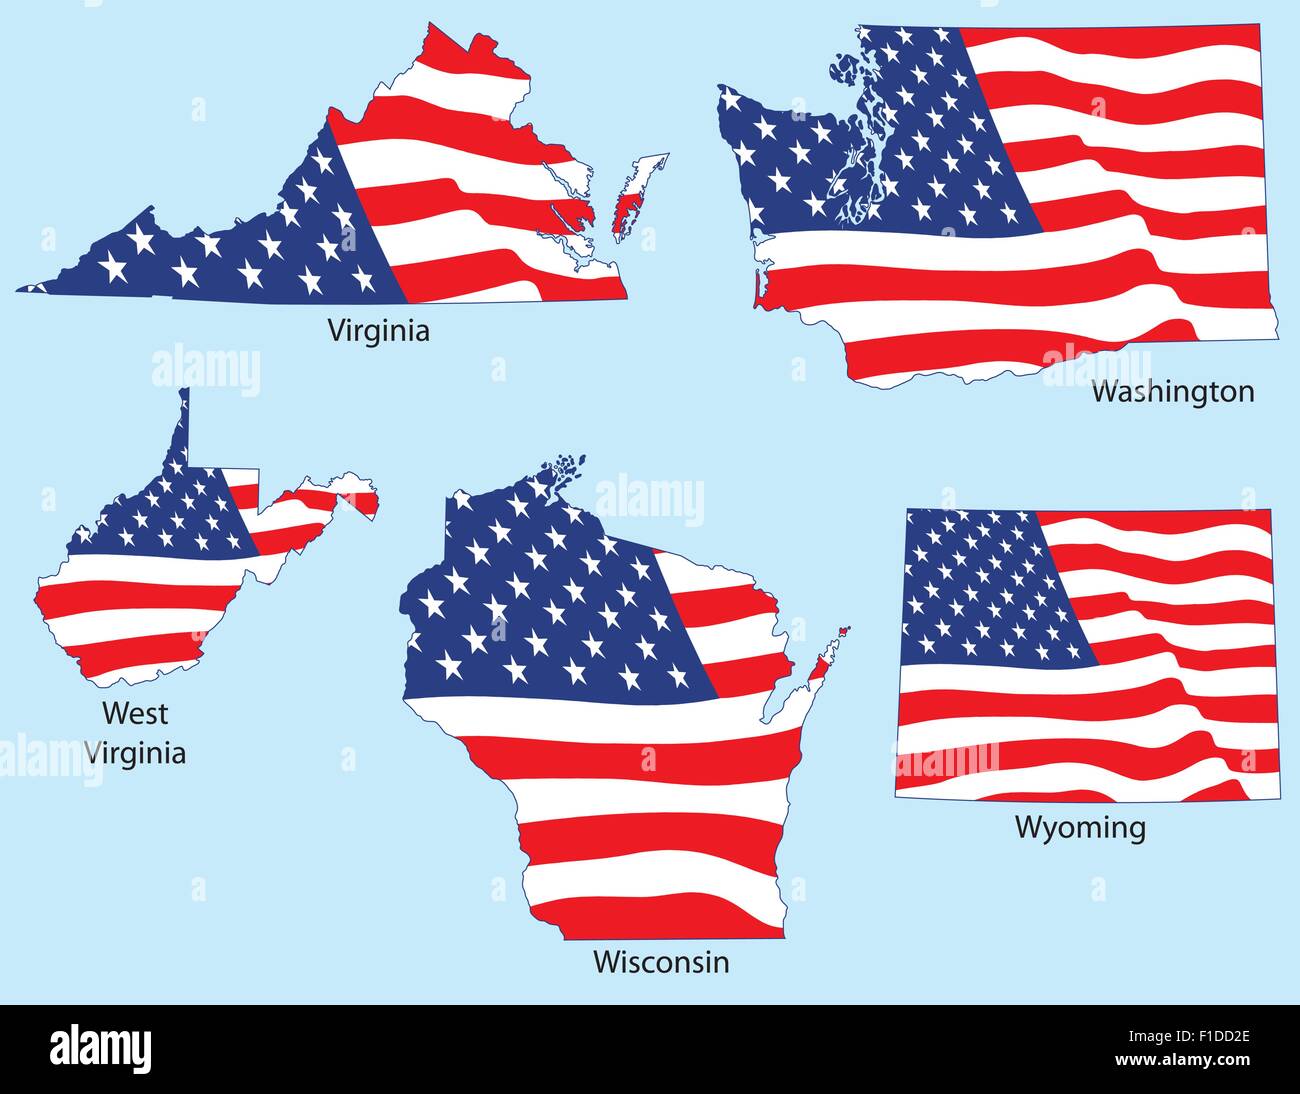 Virginia, Washington, West Virginia, Wisconsin, Wyoming Umrisse mit Fahnen, gruppiert jeweils einzeln Stock Vektor